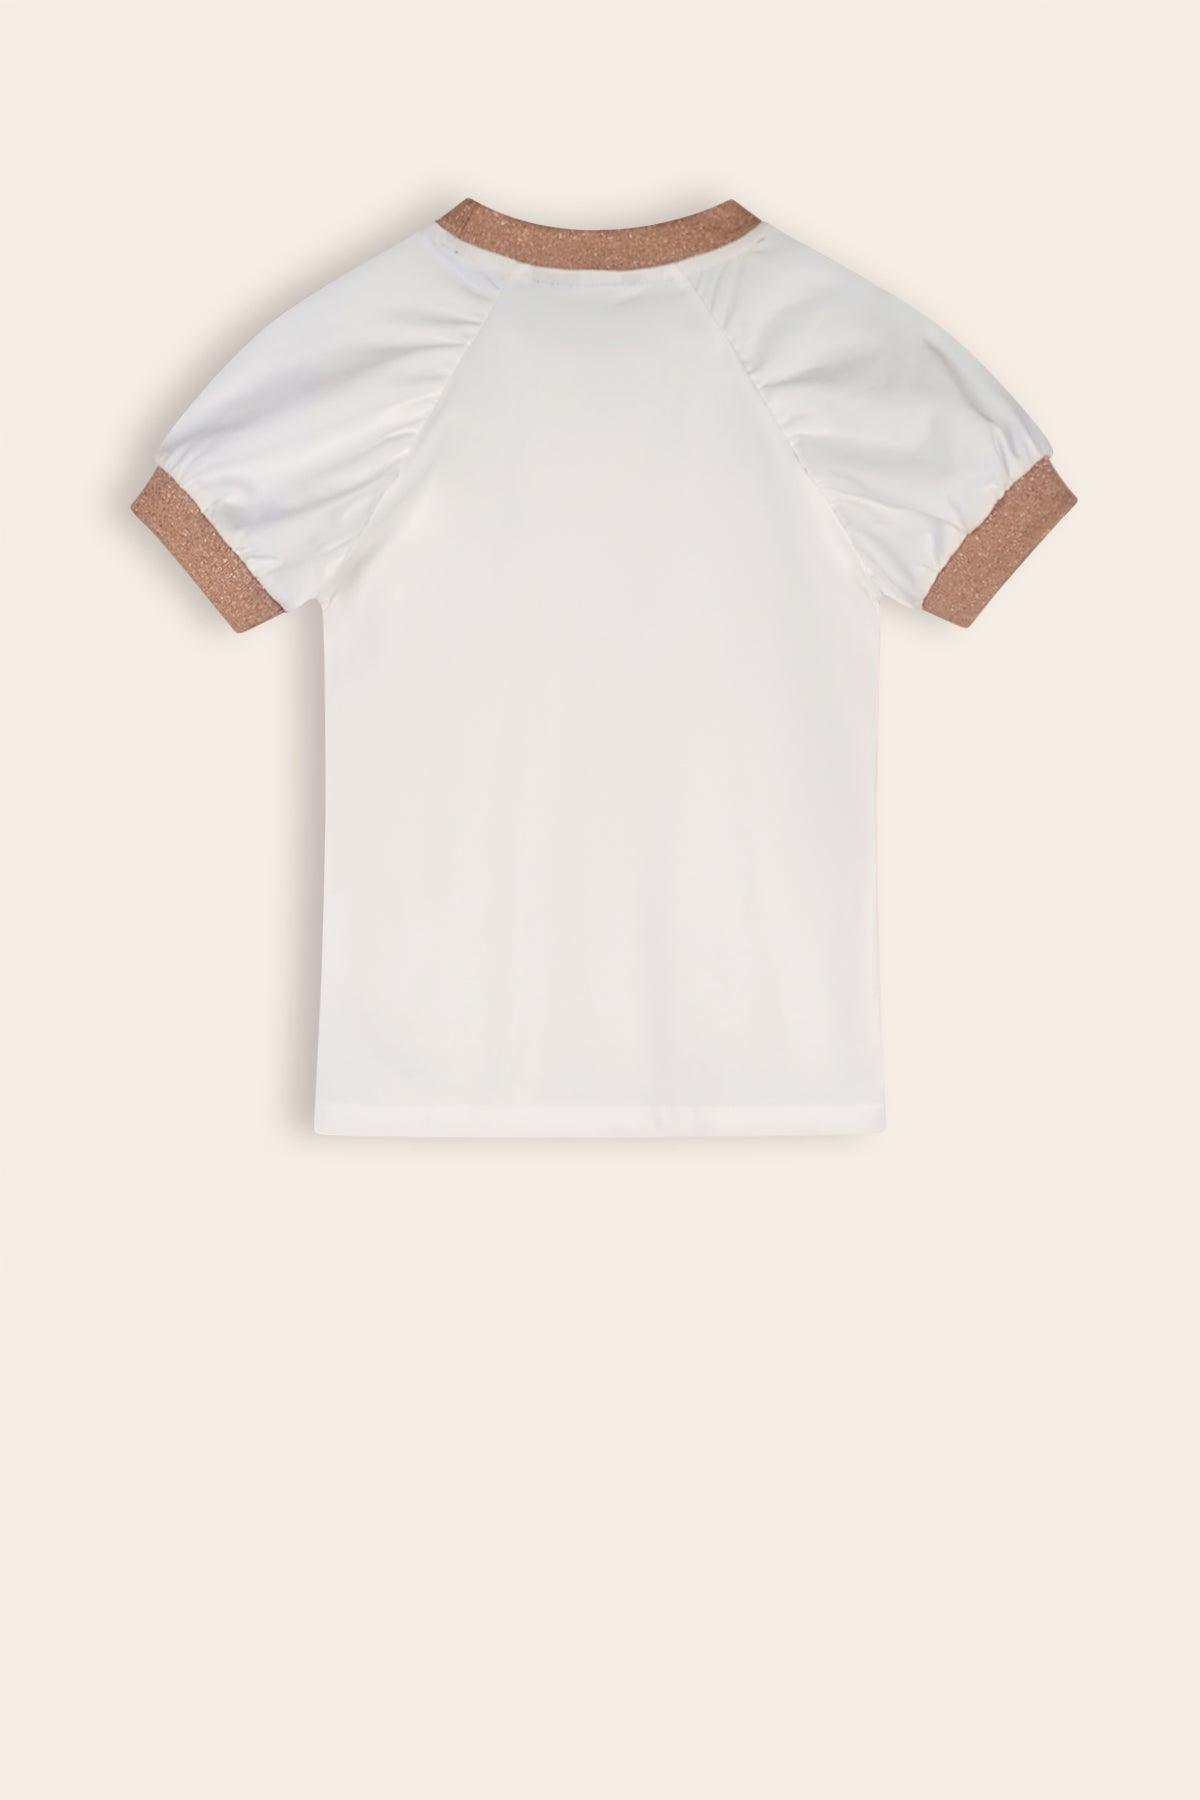 Kayla Fancy Raglan Tshirt Snow White - NoNo Kidswear